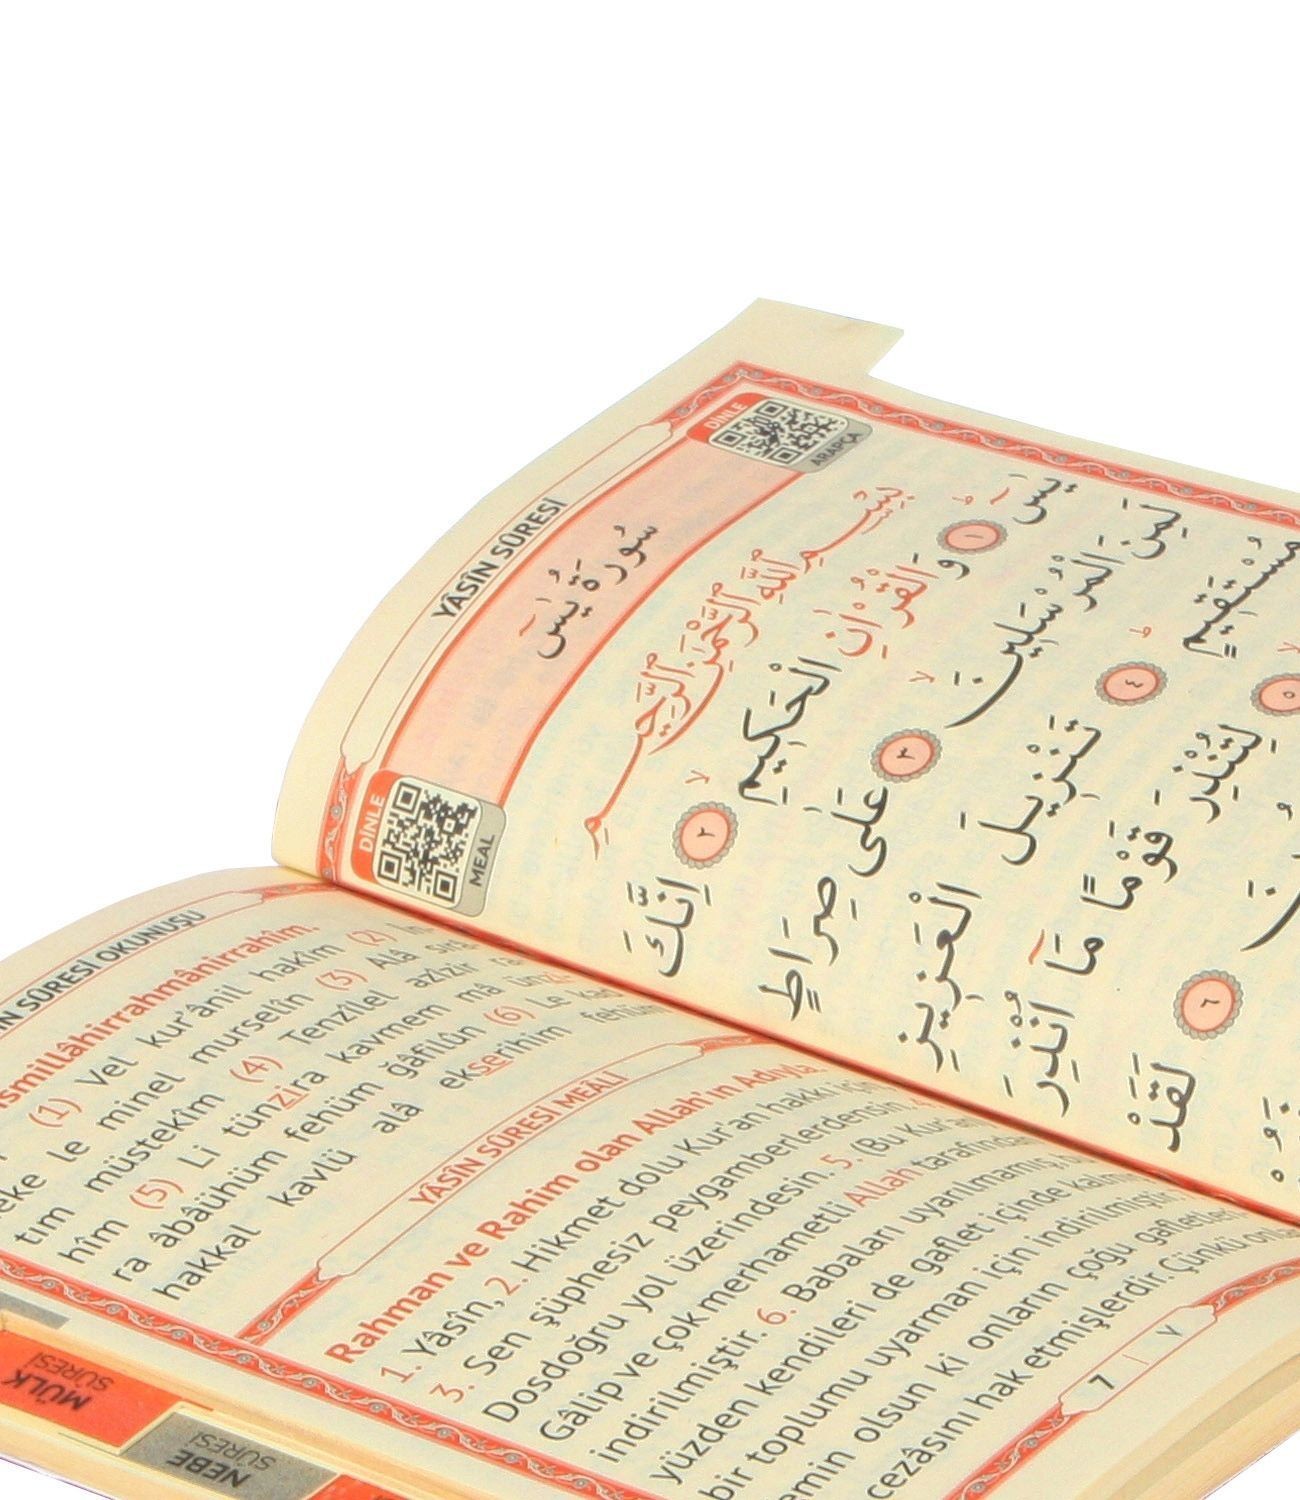  İsim Baskılı   Ciltli Yasin Kitabı   Osmanlı Desen   Lacivert   Çanta Boy